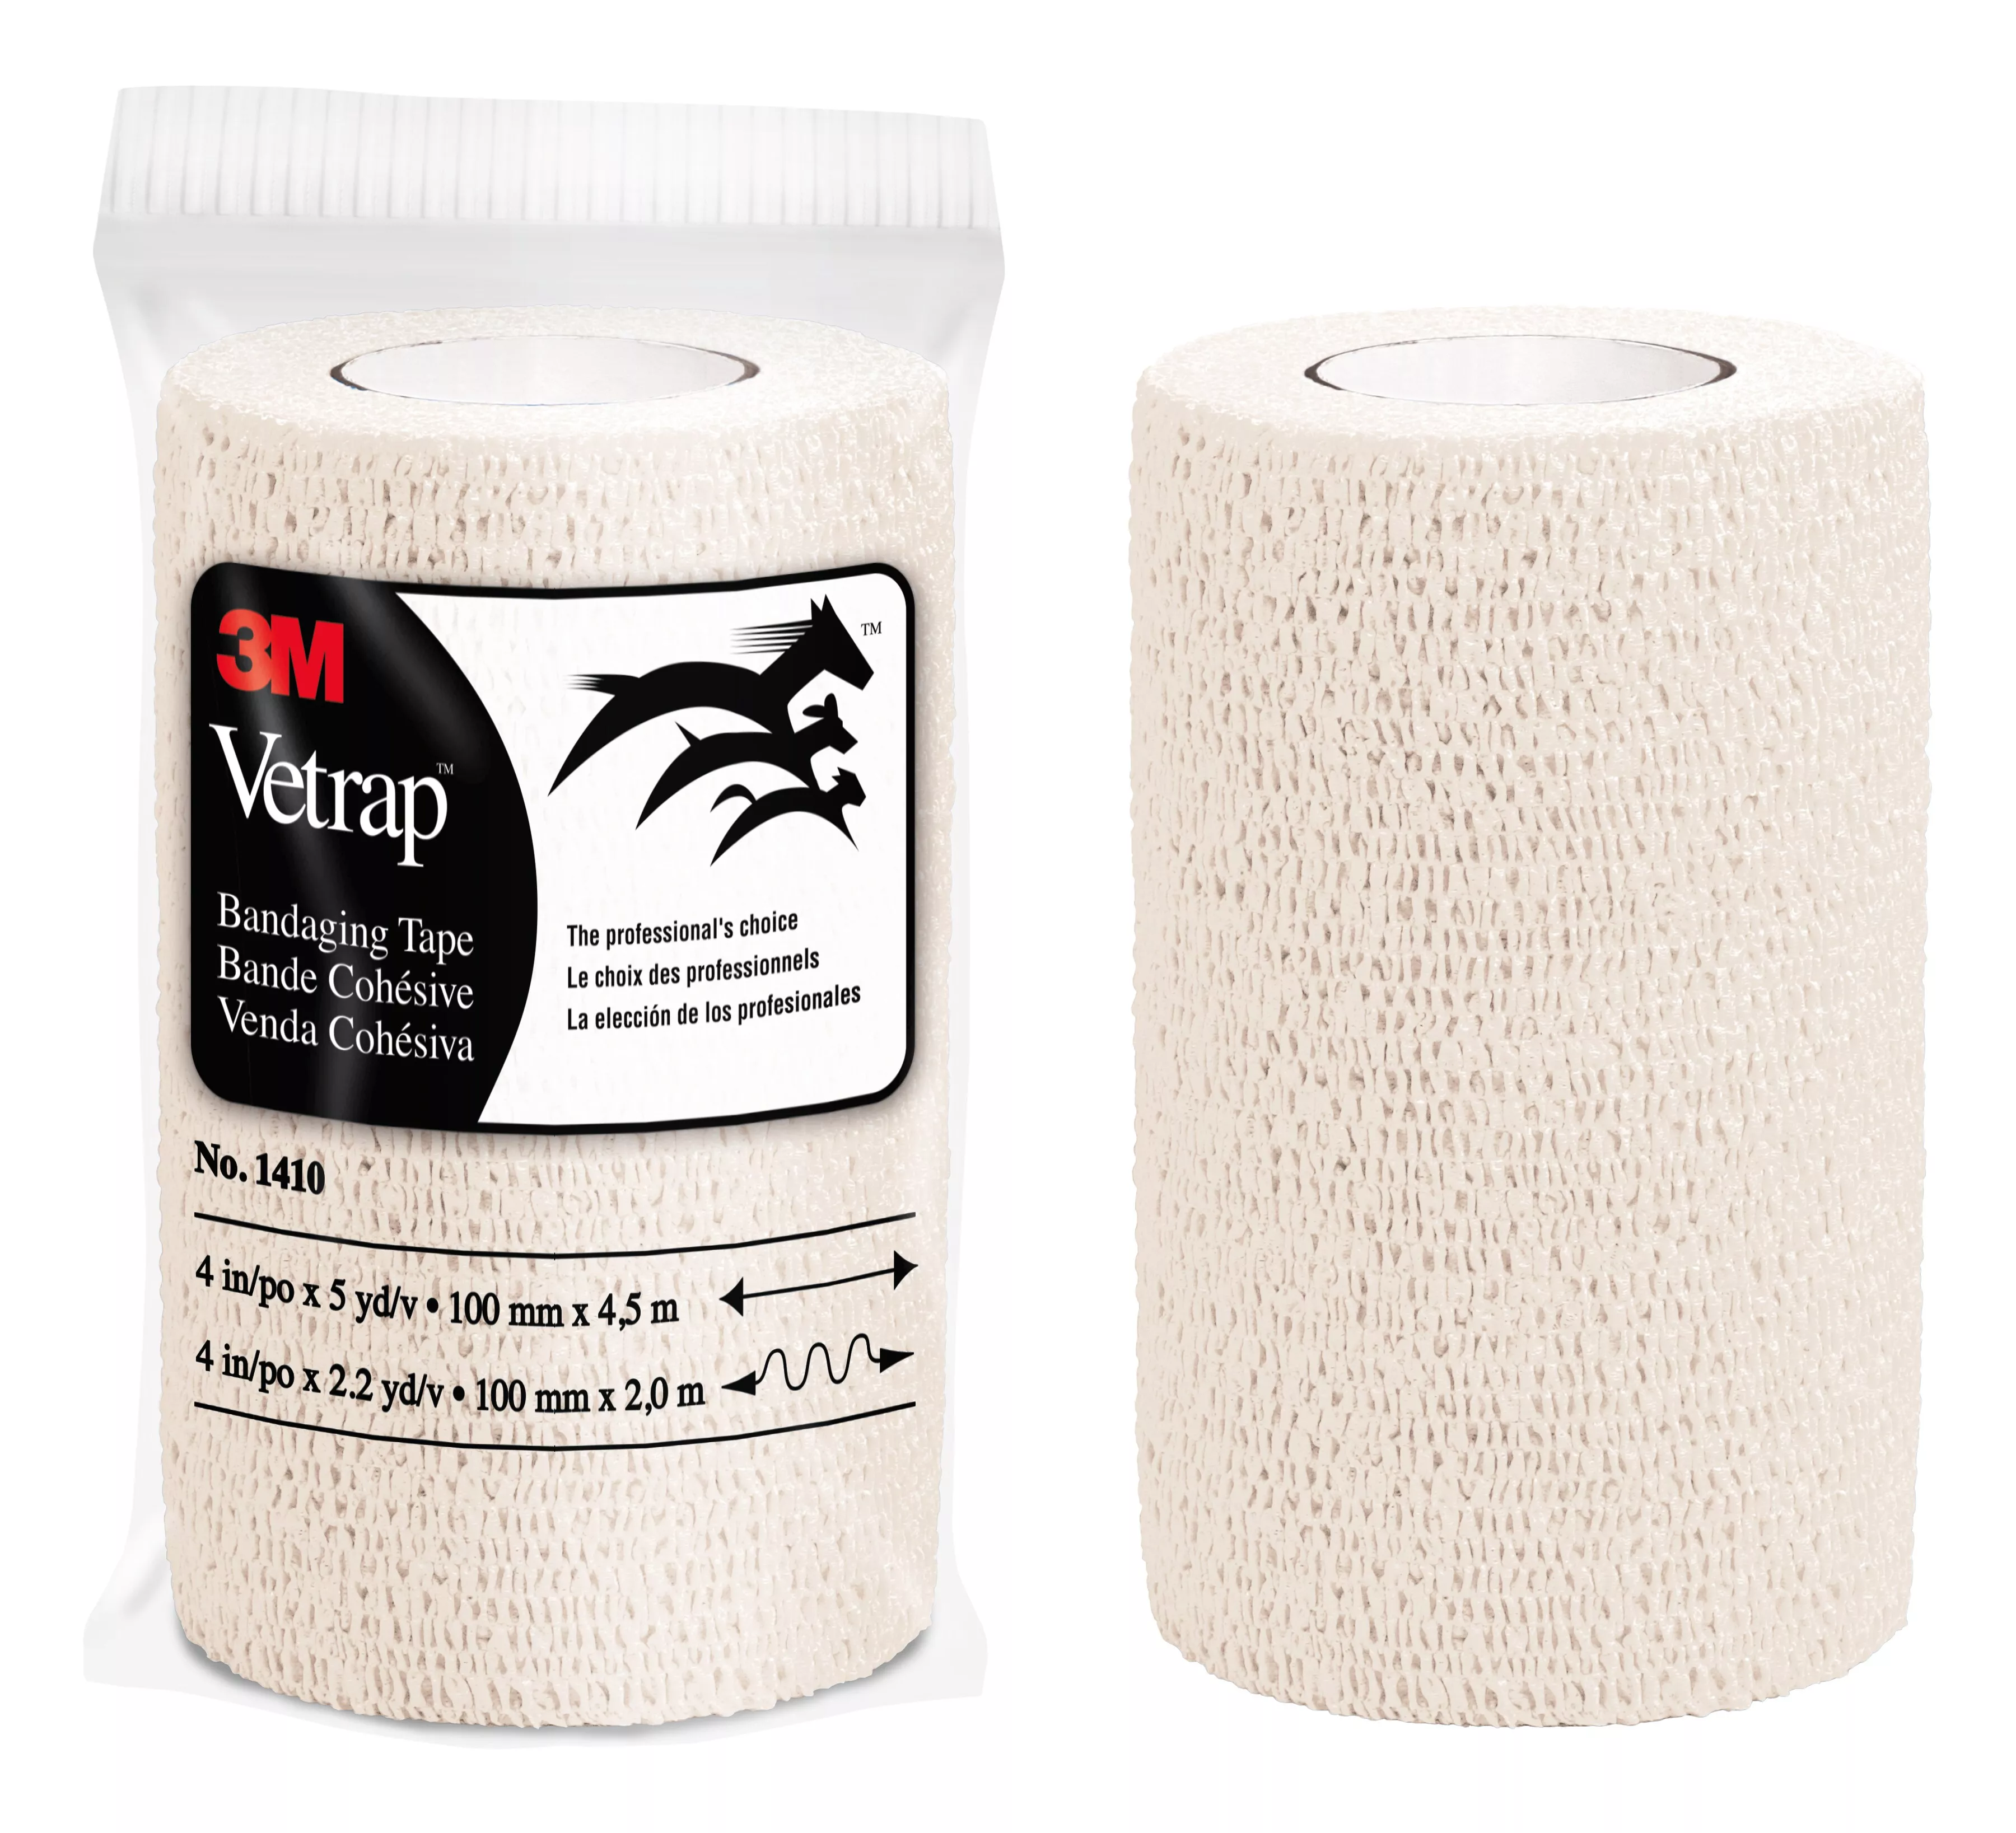 3M™ Vetrap™ Bandaging Tape 1410W-18, White, 4 in x 5 yd (100 mm x 4,5 m), 18 Rolls/Case